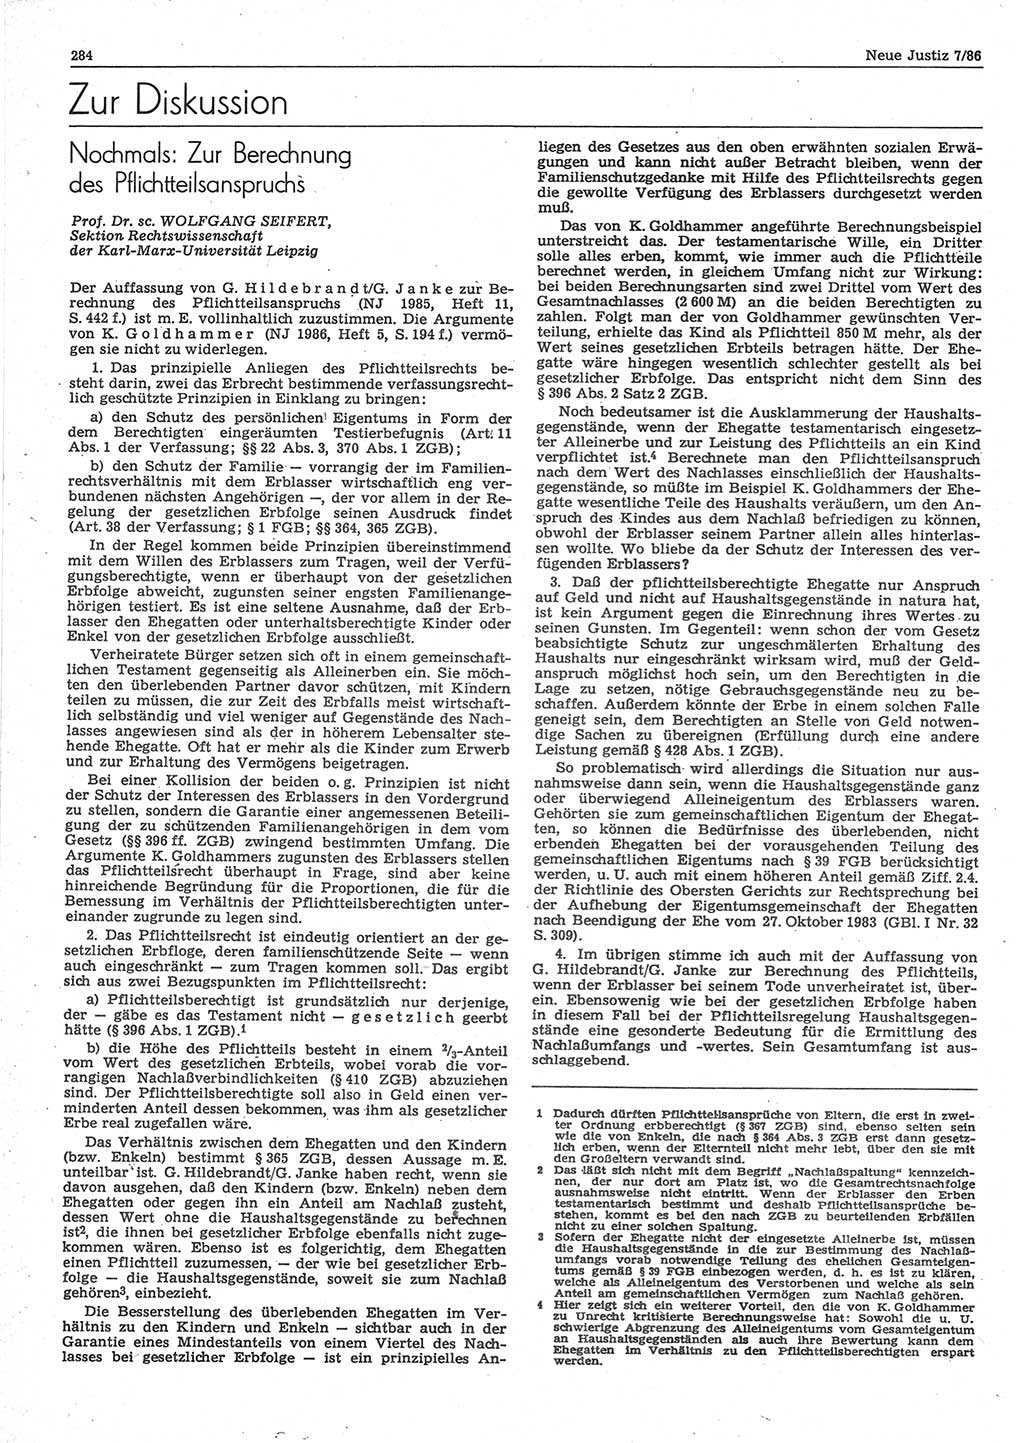 Neue Justiz (NJ), Zeitschrift für sozialistisches Recht und Gesetzlichkeit [Deutsche Demokratische Republik (DDR)], 40. Jahrgang 1986, Seite 284 (NJ DDR 1986, S. 284)